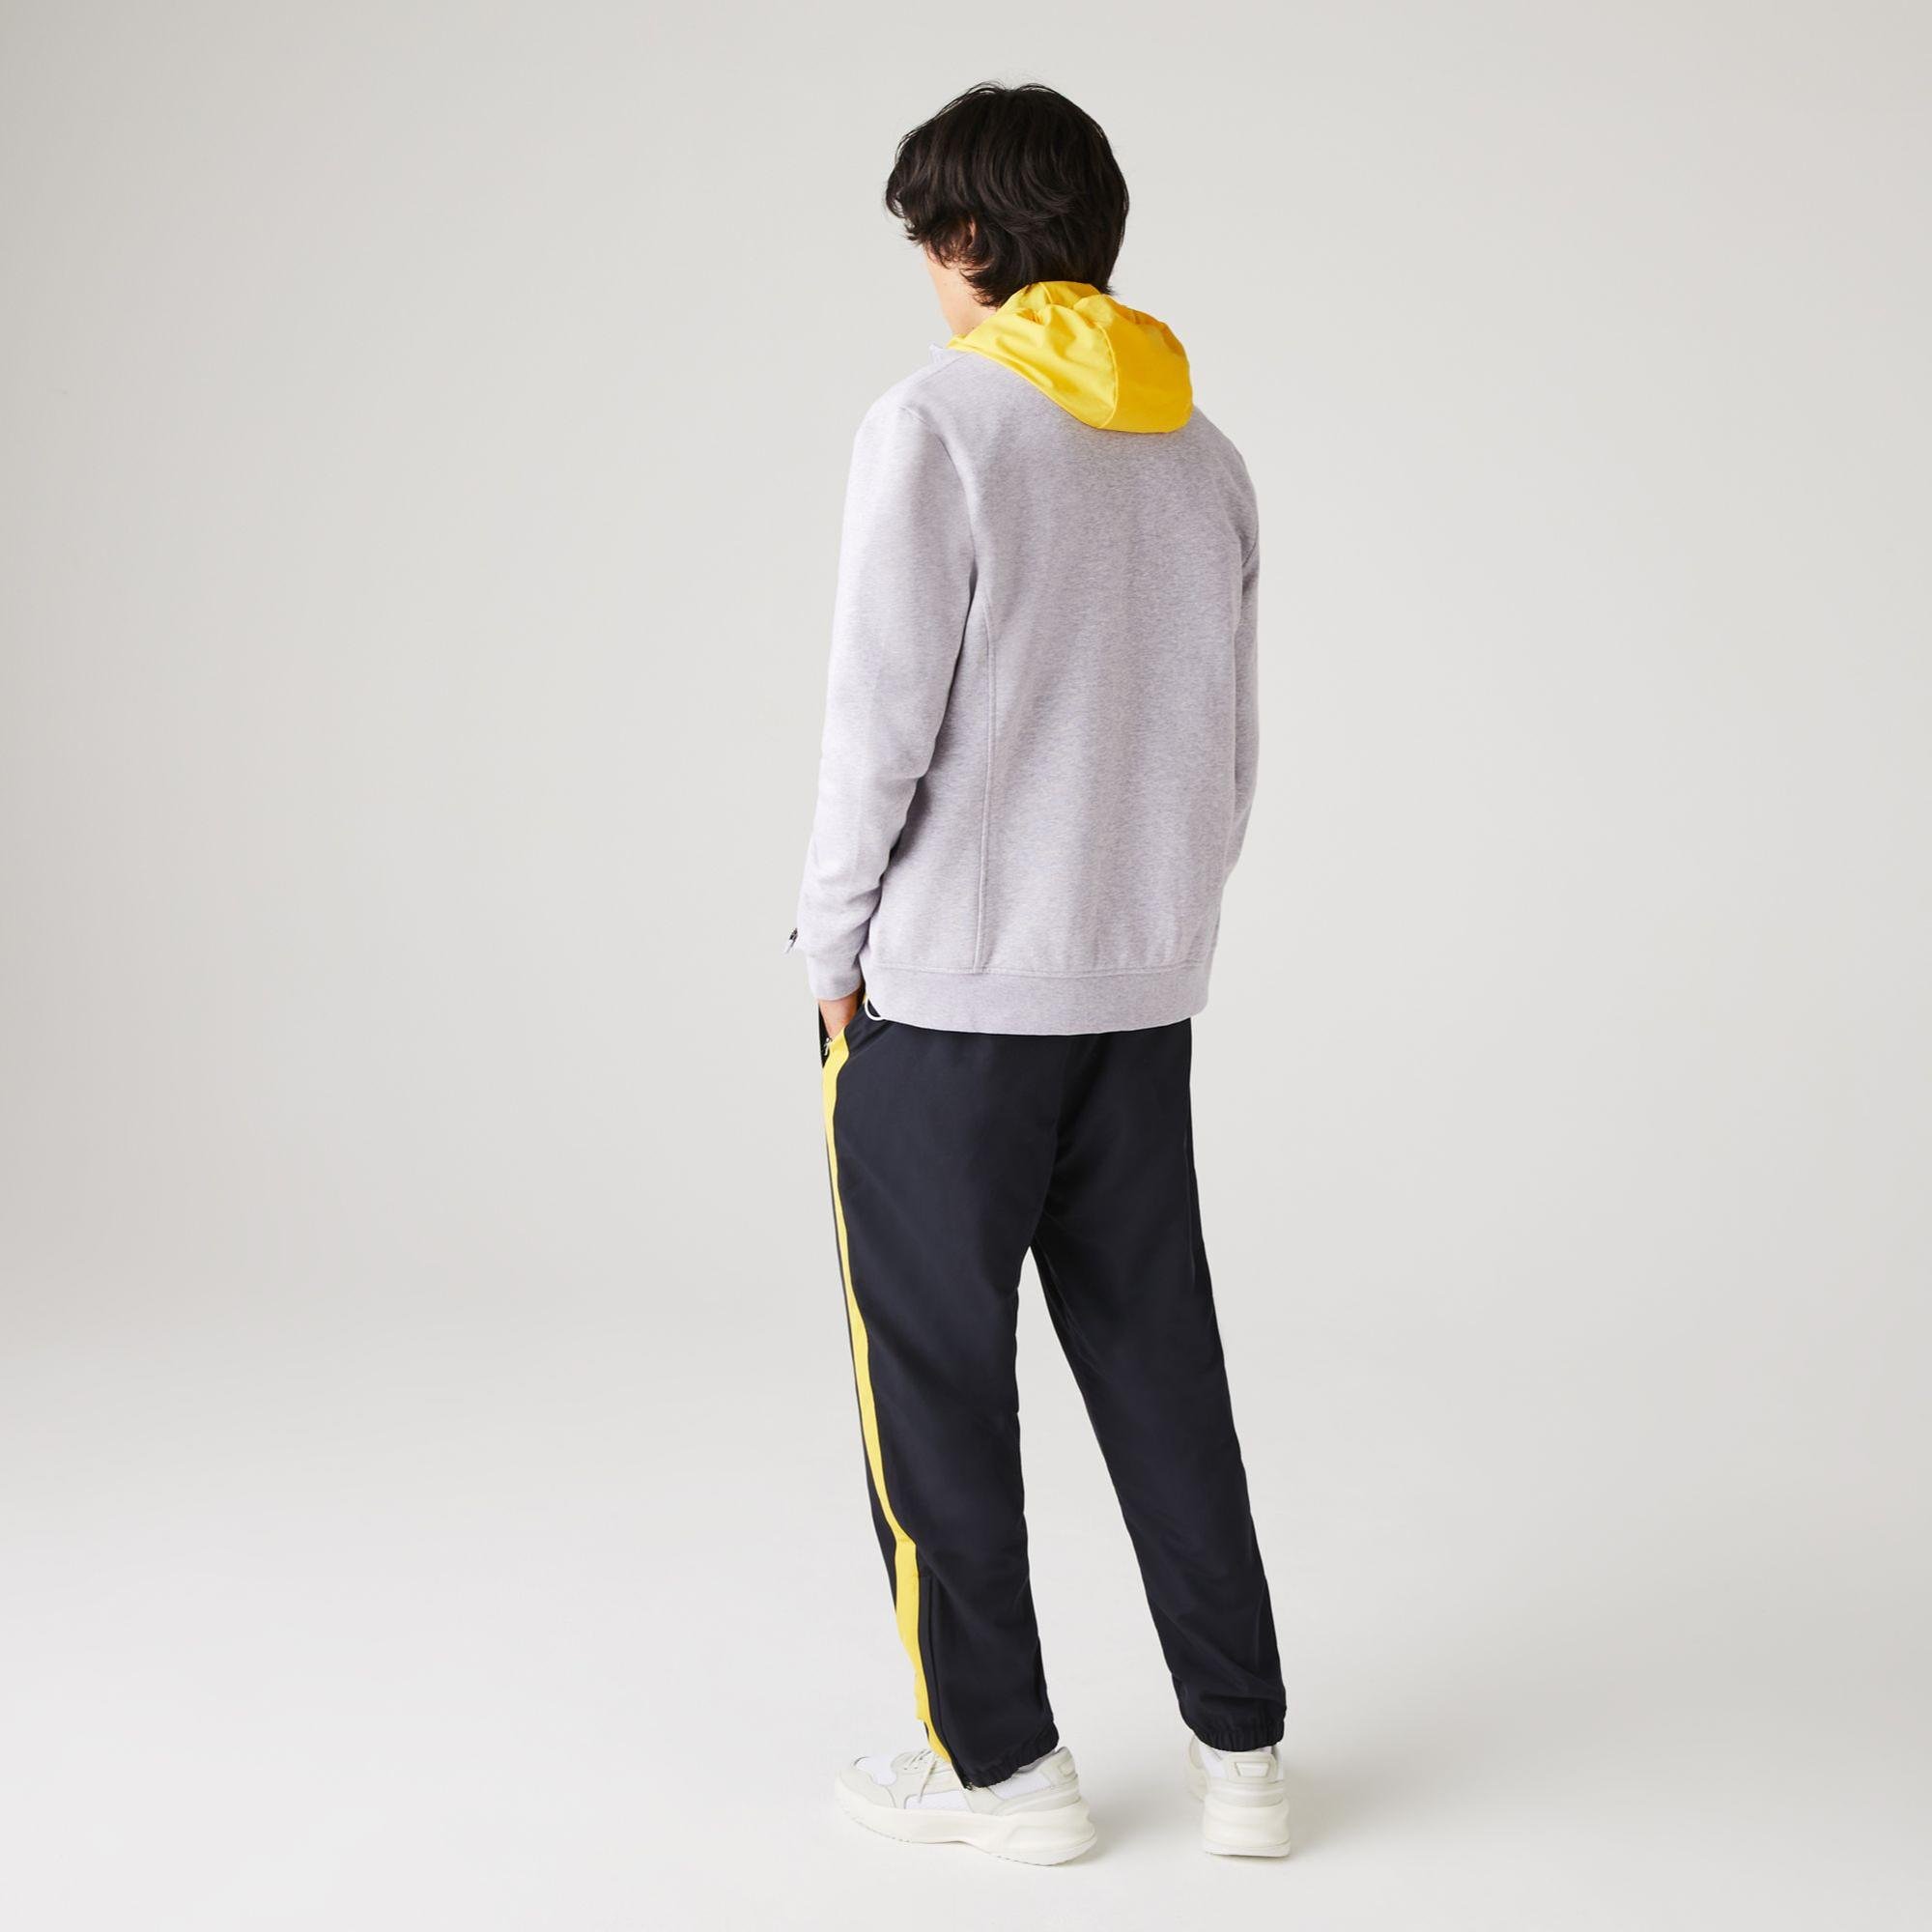 Lacoste Men's SPORT Cotton Blend Fleece Zip Sweatshirt